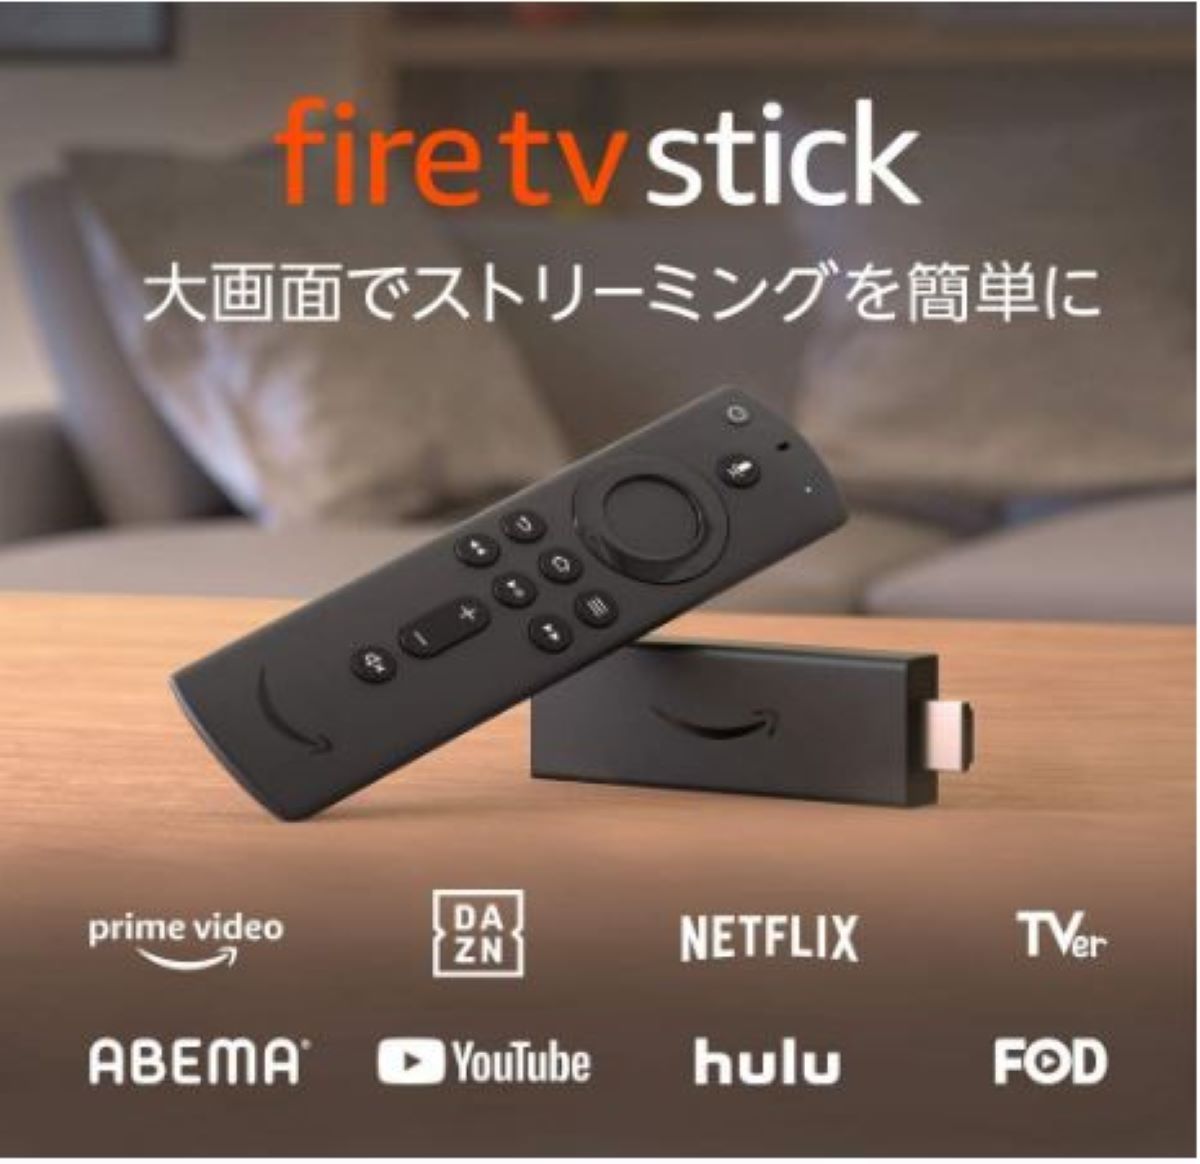 超快適 Amazon Fire Tv Stick 早速買ってみた 使い方 使用感を紹介